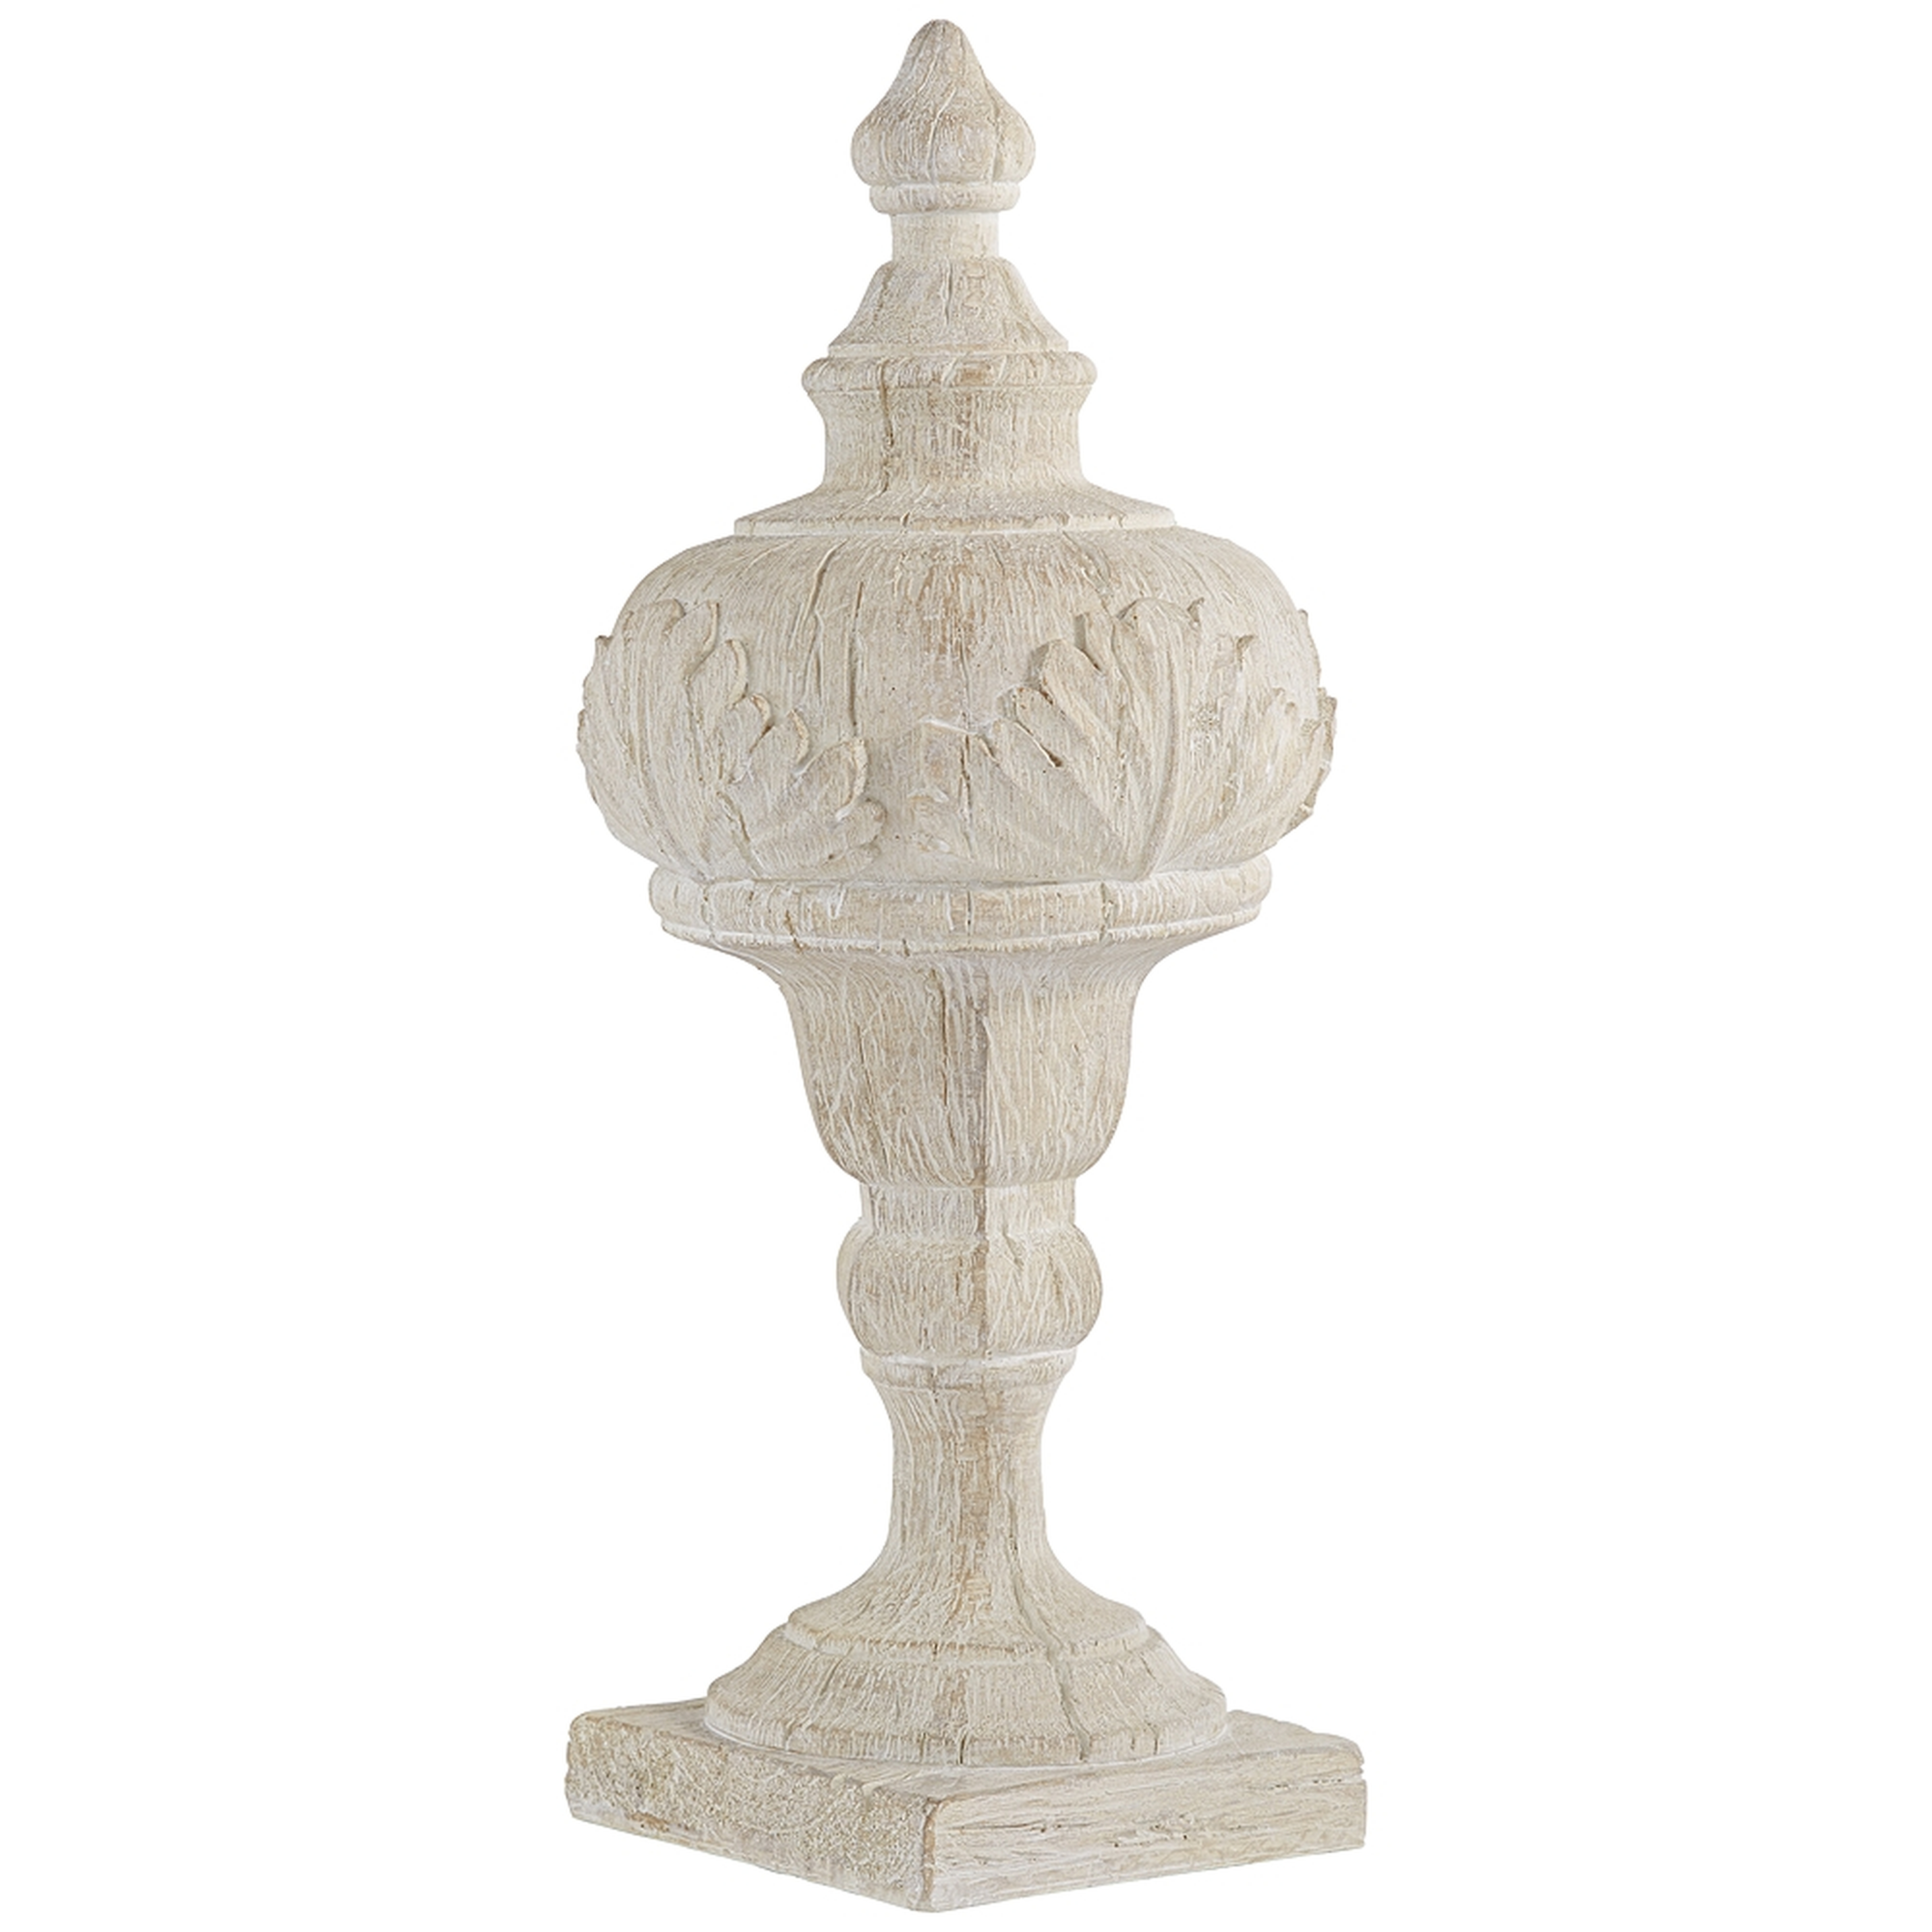 Matte Cream 16" High Faux Wood Table Top Sculpture - Style # 73D54 - Lamps Plus